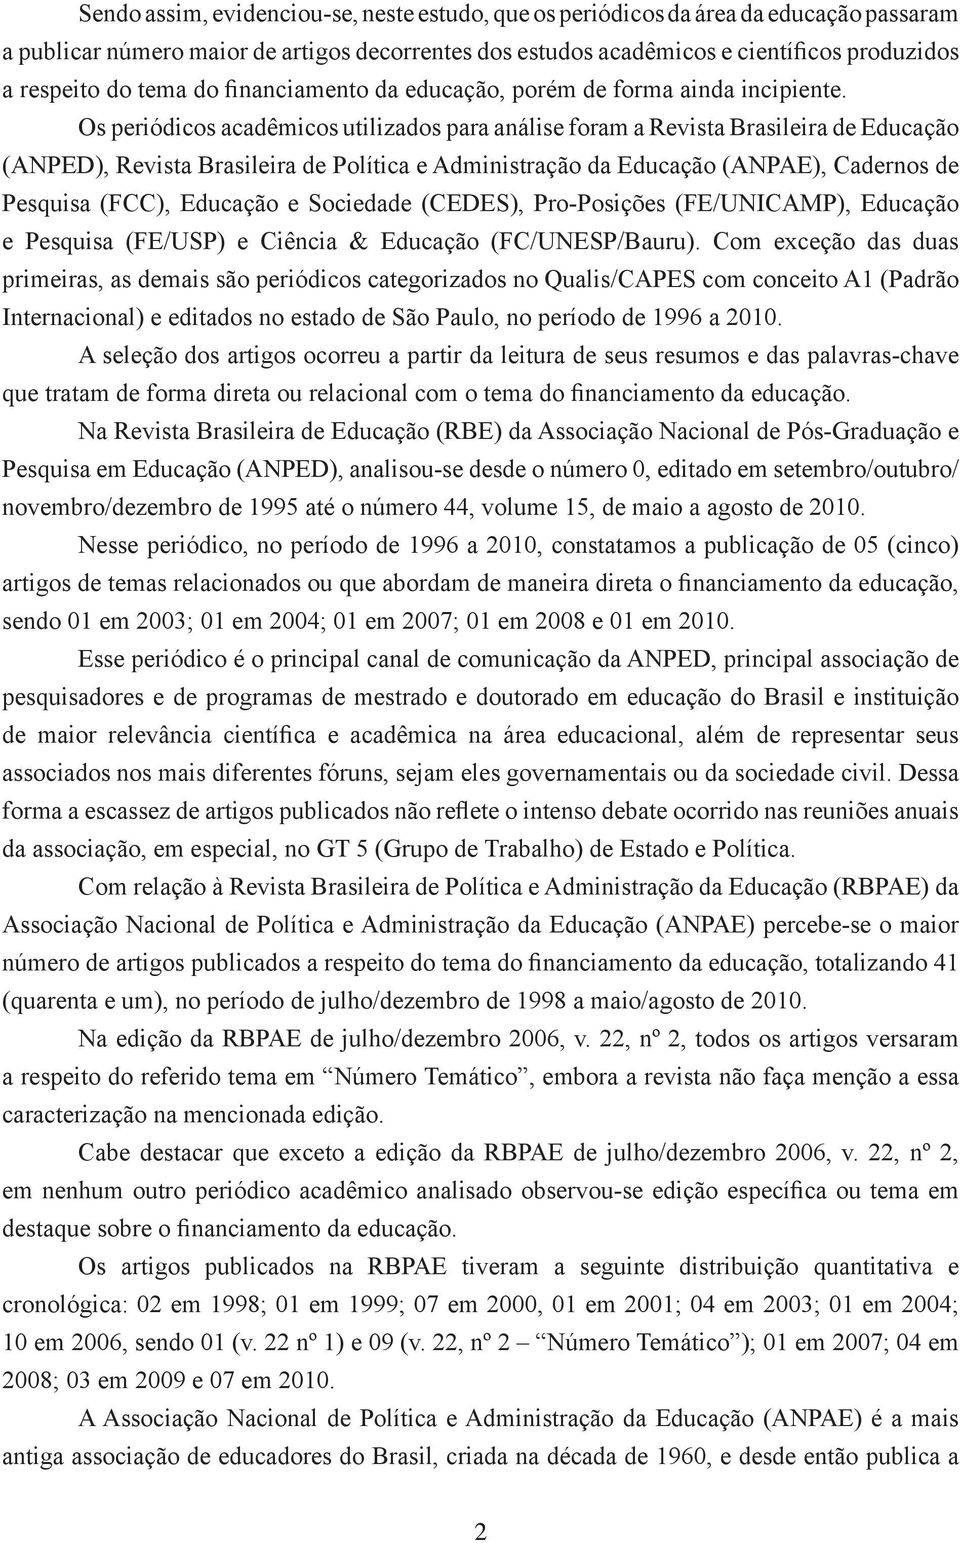 Os periódicos acadêmicos utilizados para análise foram a Revista Brasileira de Educação (ANPED), Revista Brasileira de Política e Administração da Educação (ANPAE), Cadernos de Pesquisa (FCC),